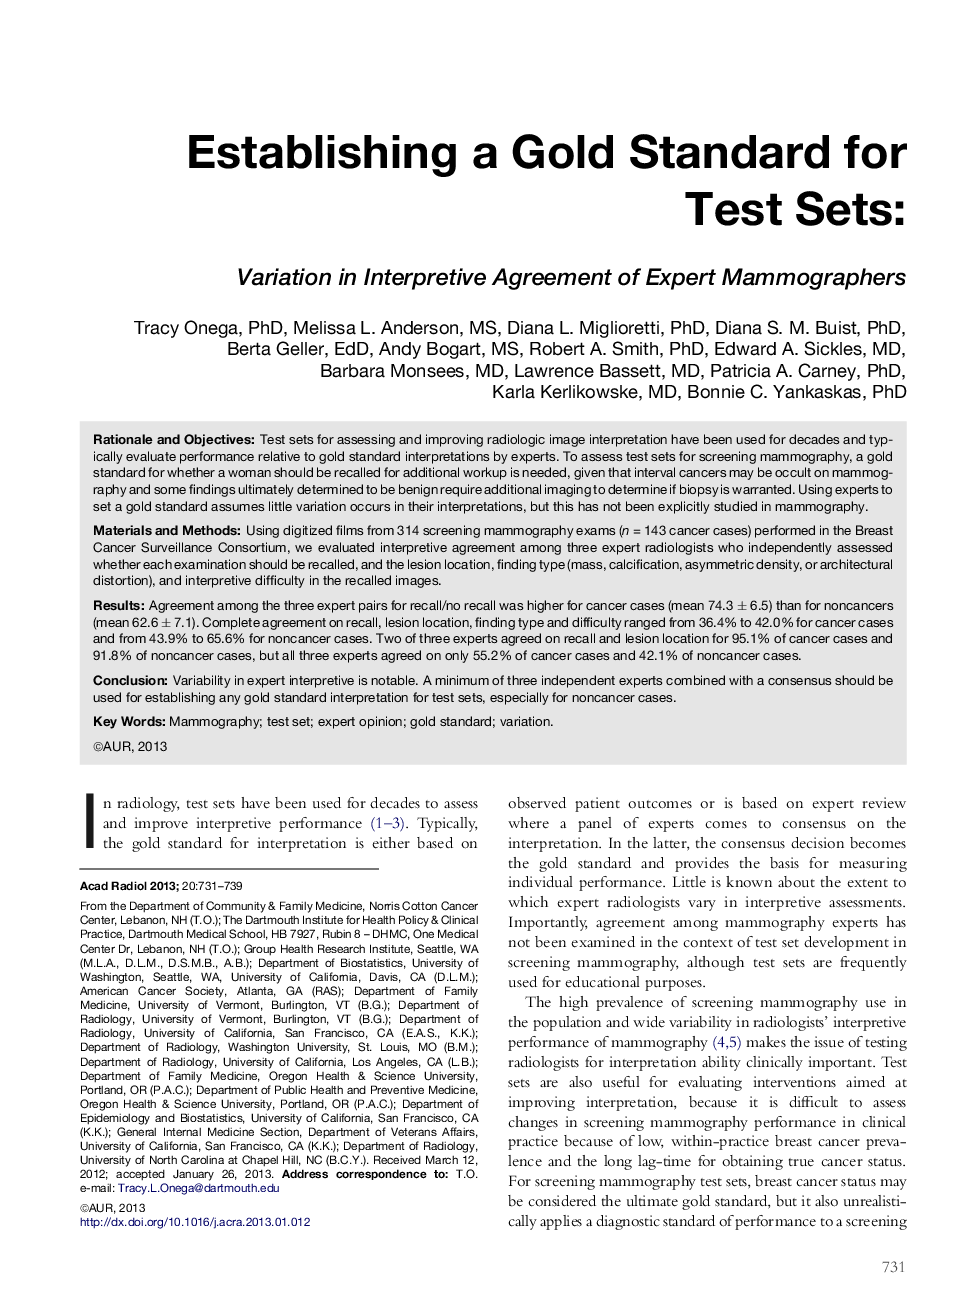 Establishing a Gold Standard for Test Sets